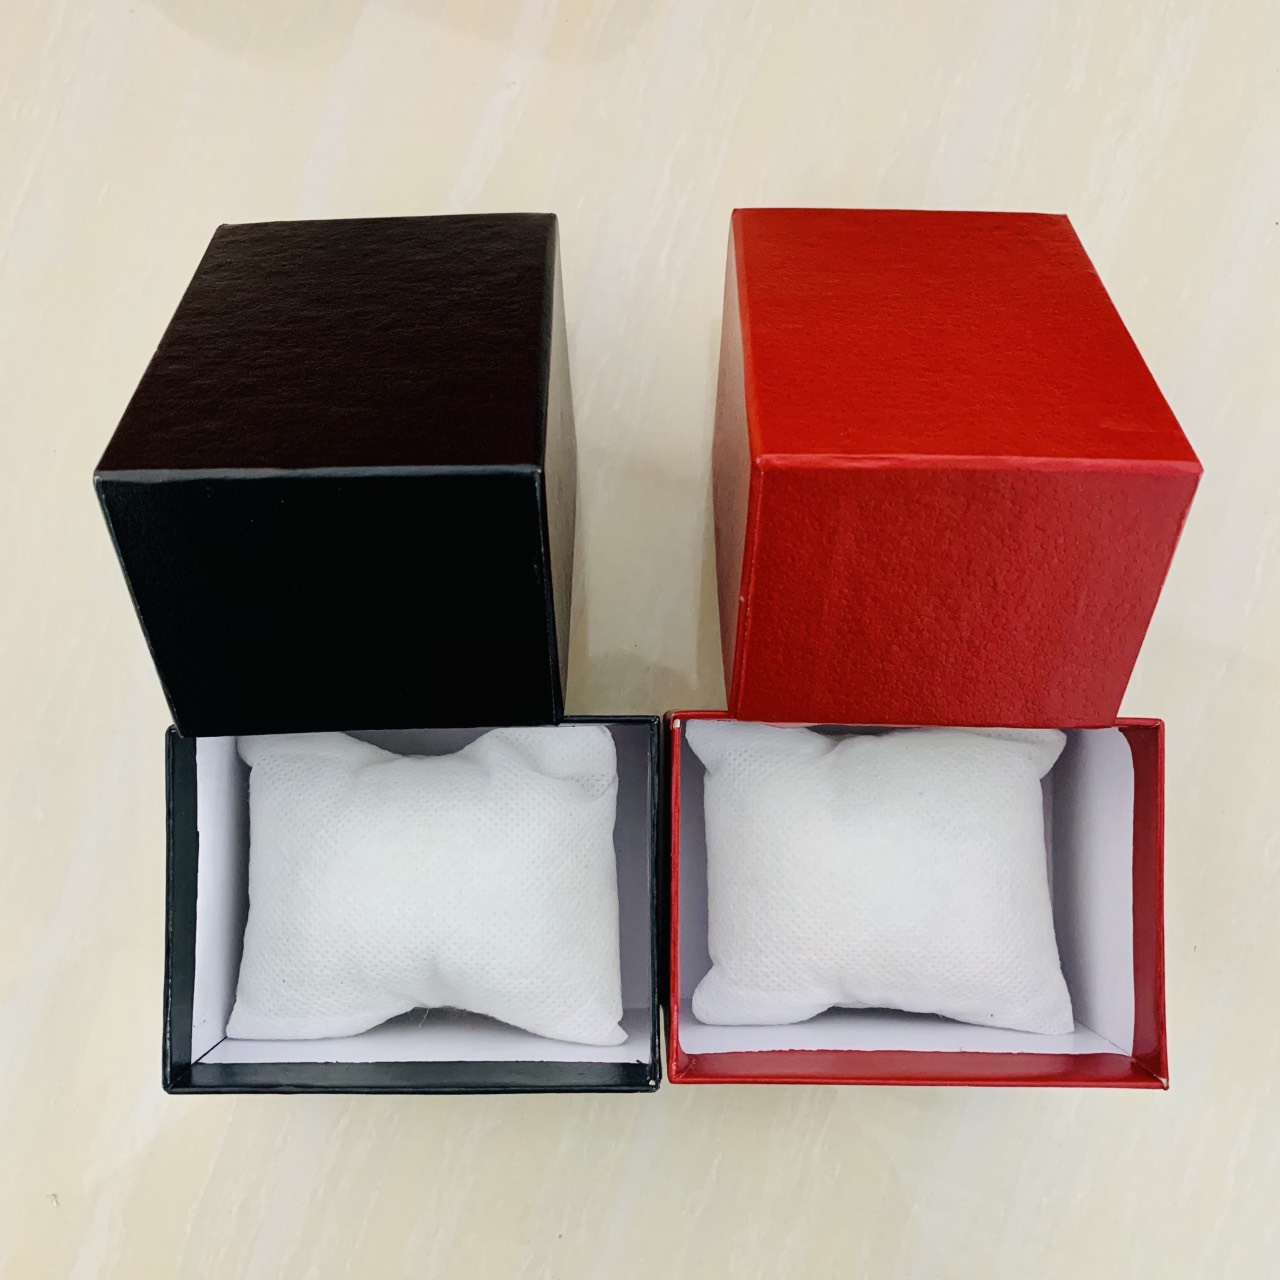 hộp cứng đựng đồng hồ bằng da,gồm màu đỏ và màu đen,dùng dựng đồng hồ hoặc đồ trang sức cực đẹp